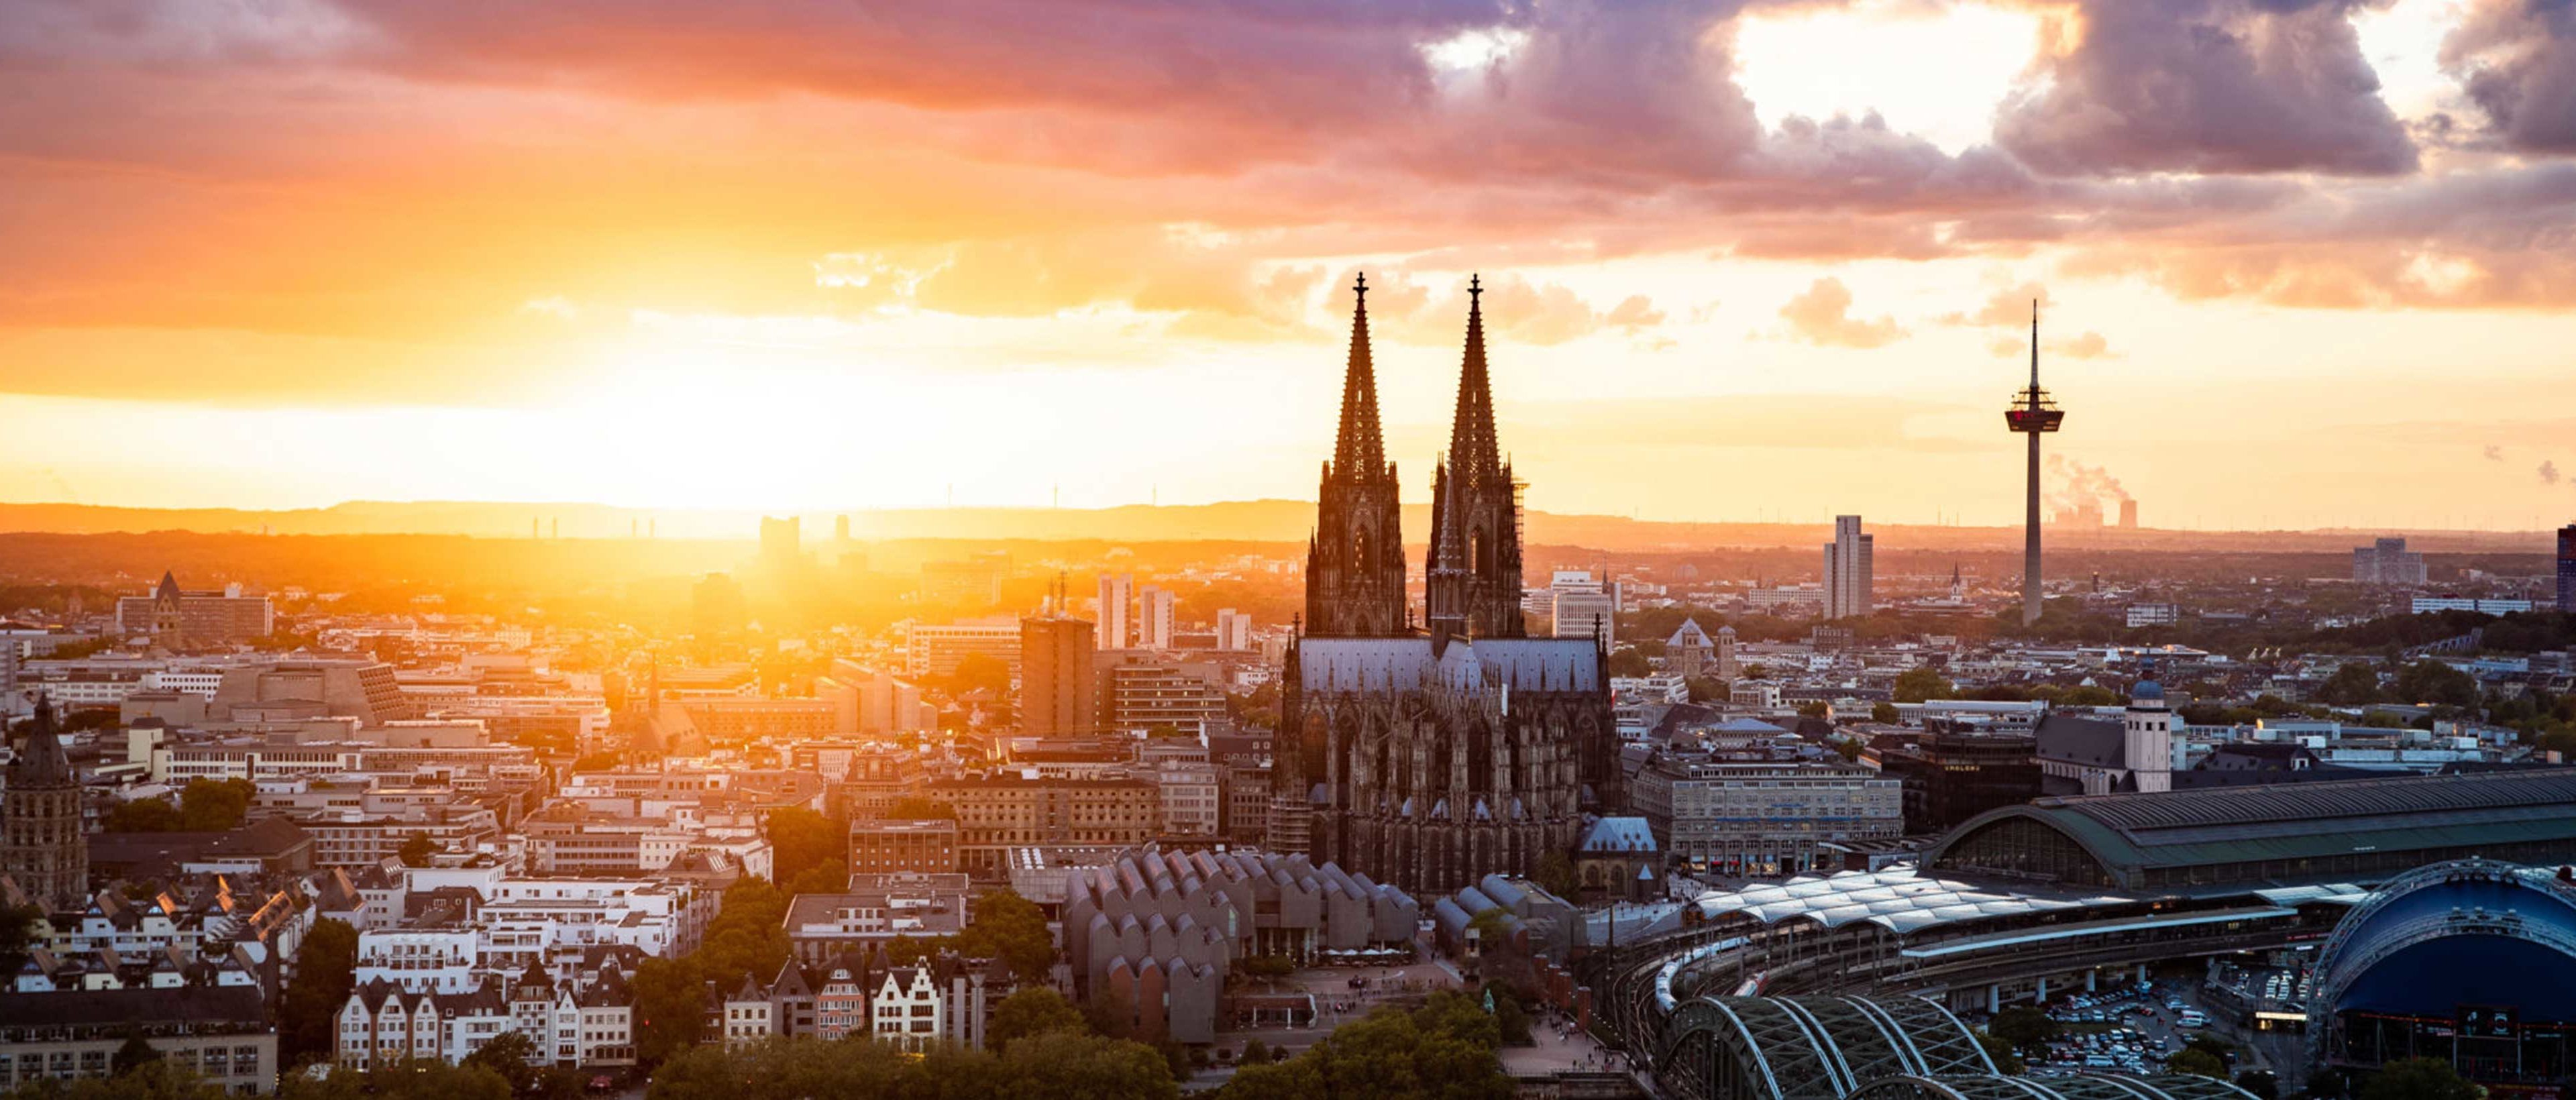 Preview Image: Reisetipps für Fotografen: Köln